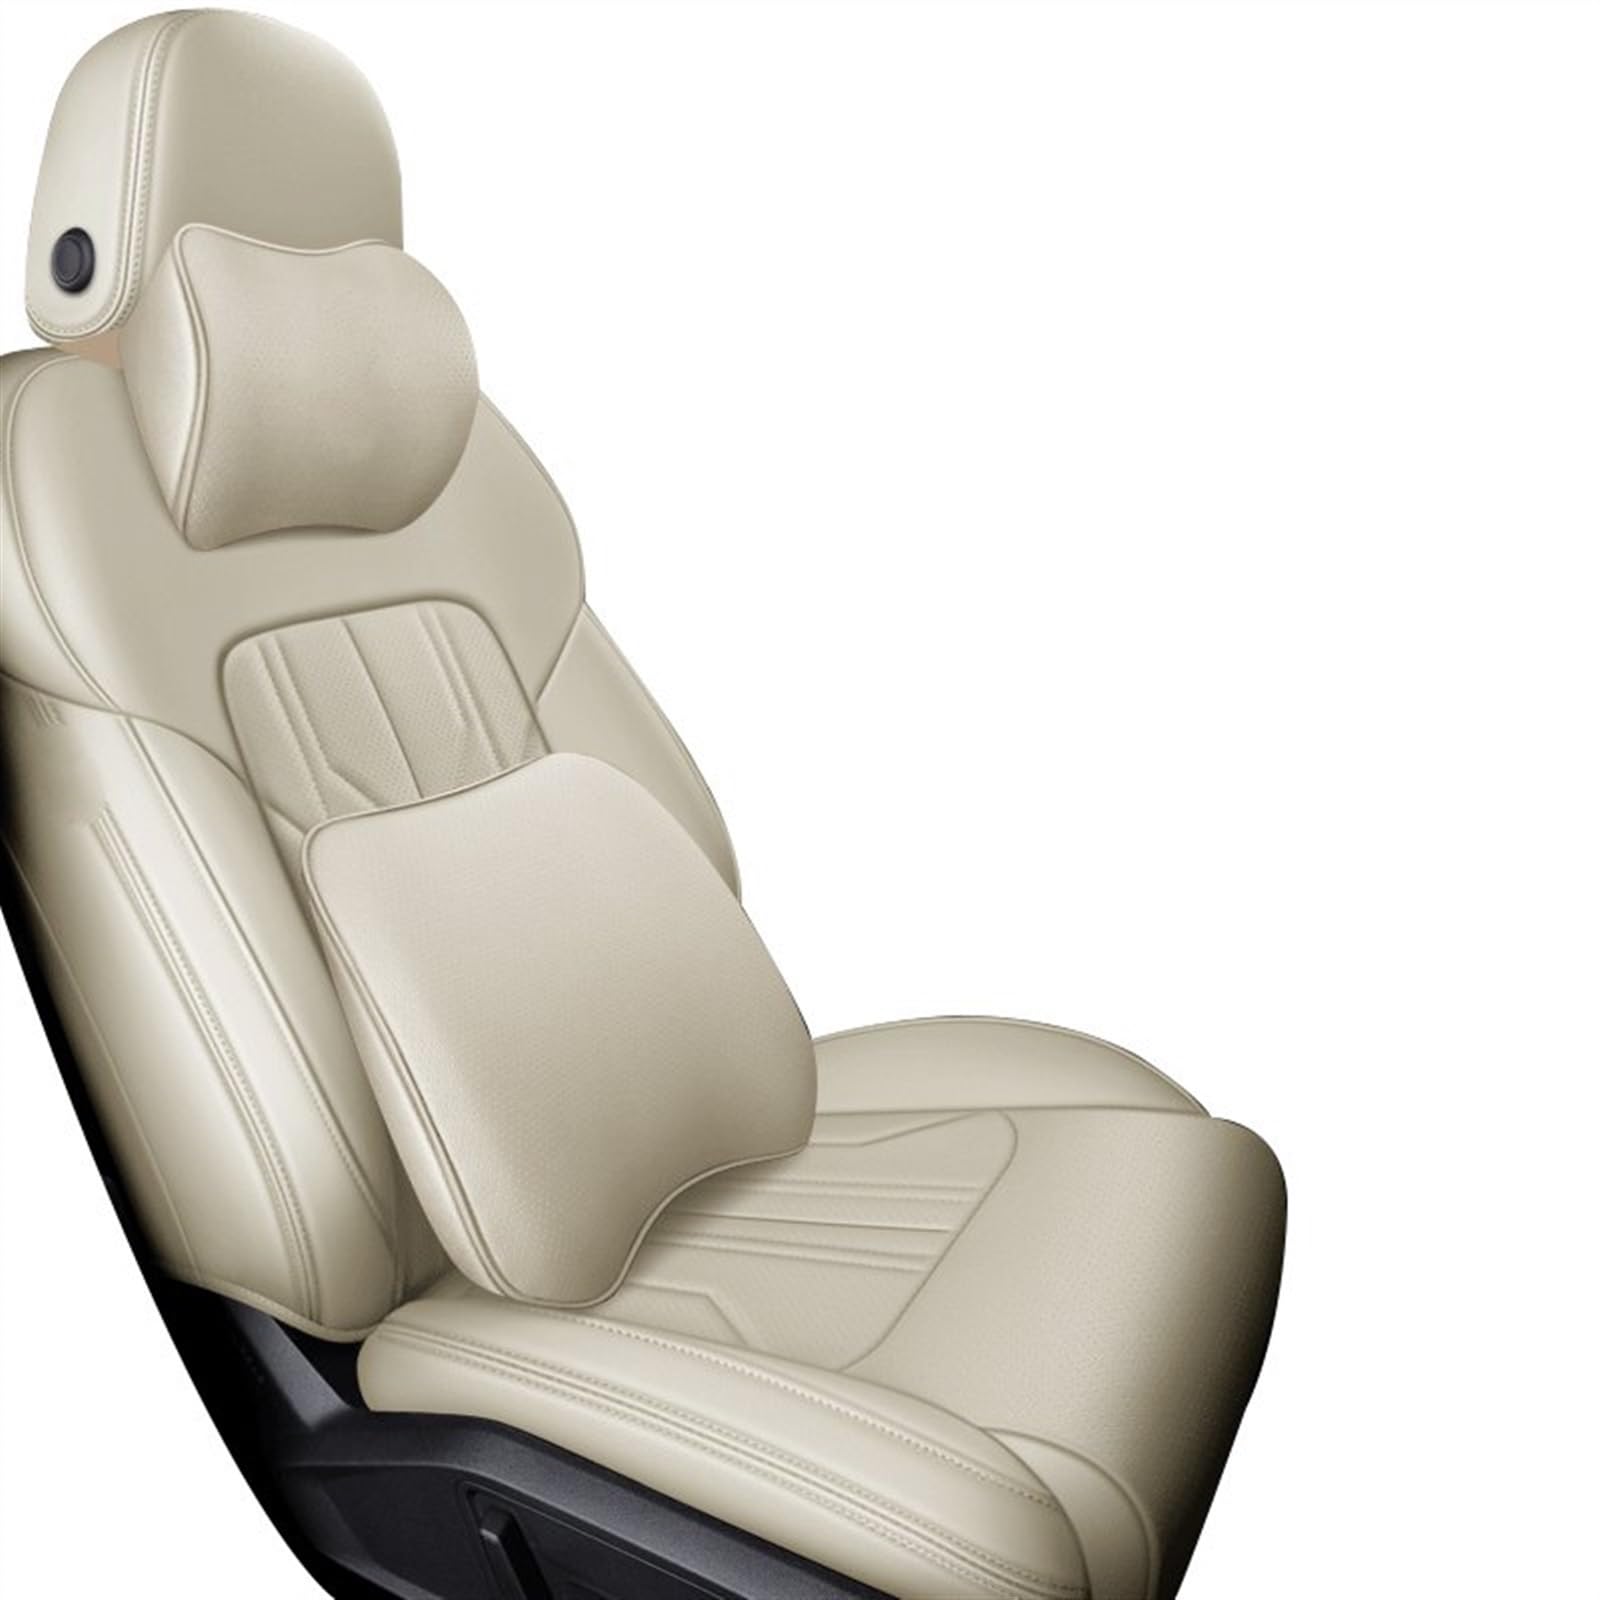 TATARENGS Automobilinnenraum Kompatibel Mit Infiniti Qx80 Qx70 Fx Ex Jx Qx50 Q70 Qx60 Q50 Qx30 Q30 Q60 Auto-Innensitzbezug-Schutz, Vier Jahreszeiten-Sitzbezug(B-Bring pillow,6) von TATARENGS